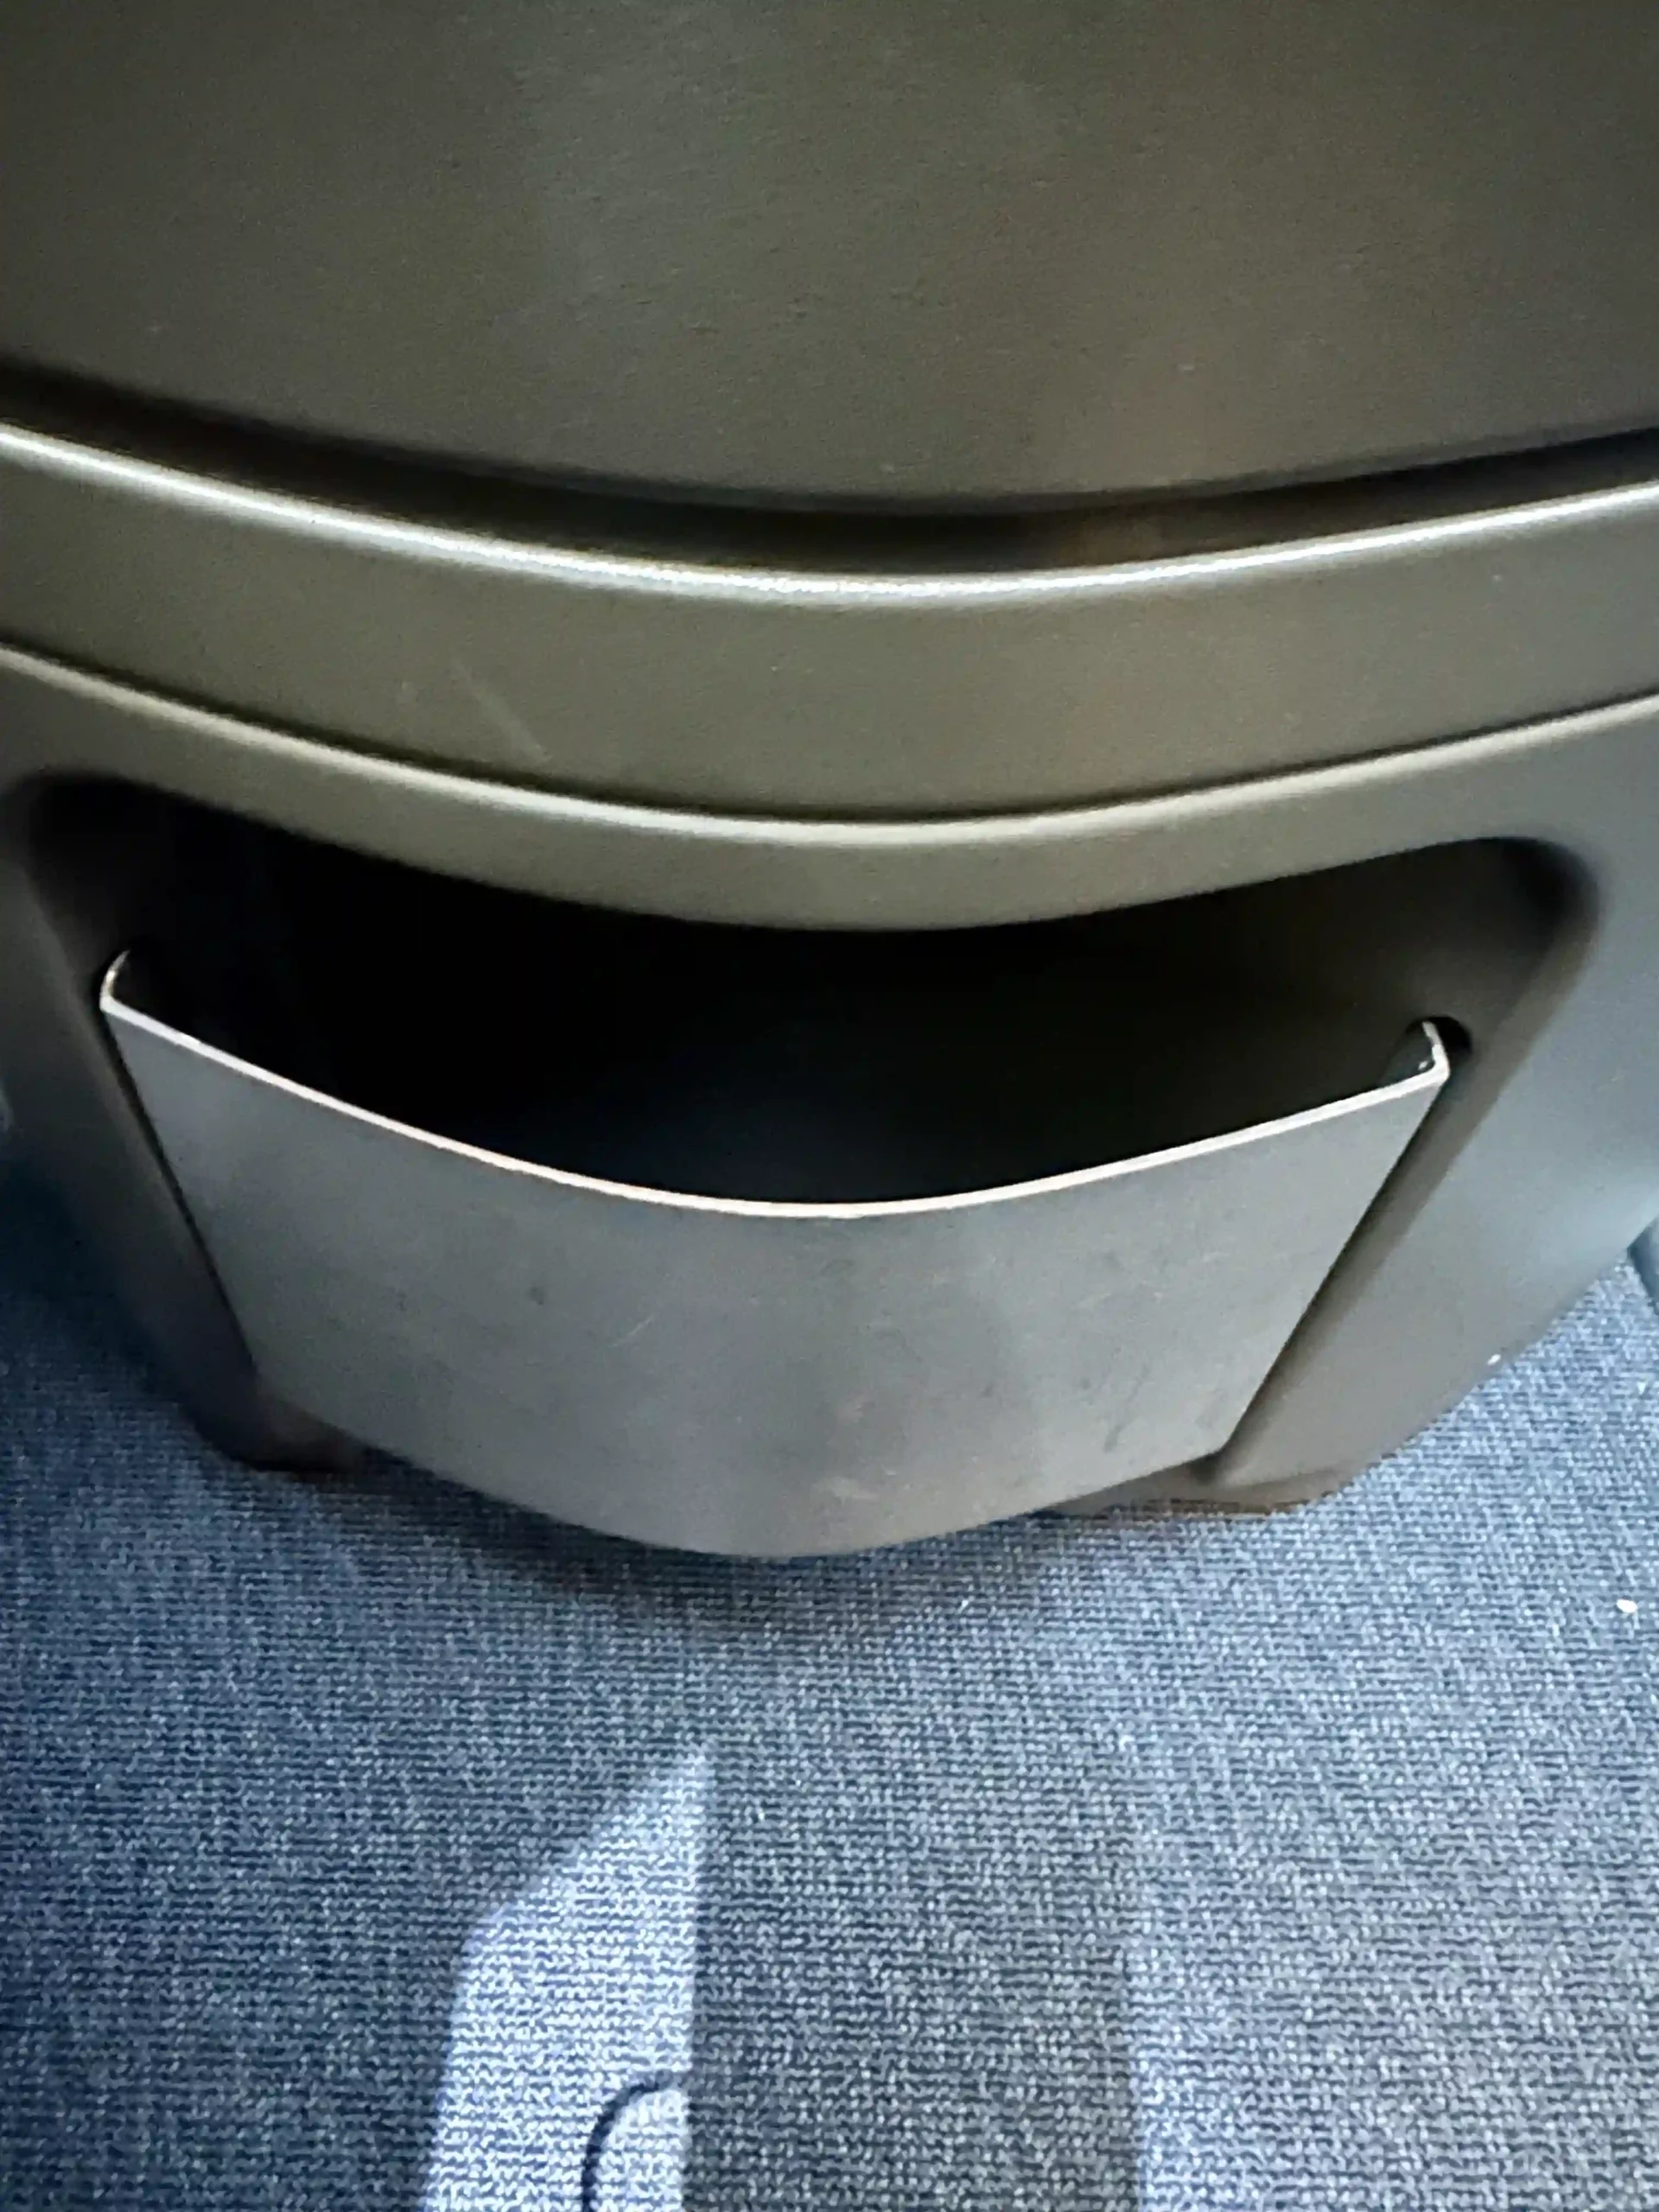 a metal bin on a carpet